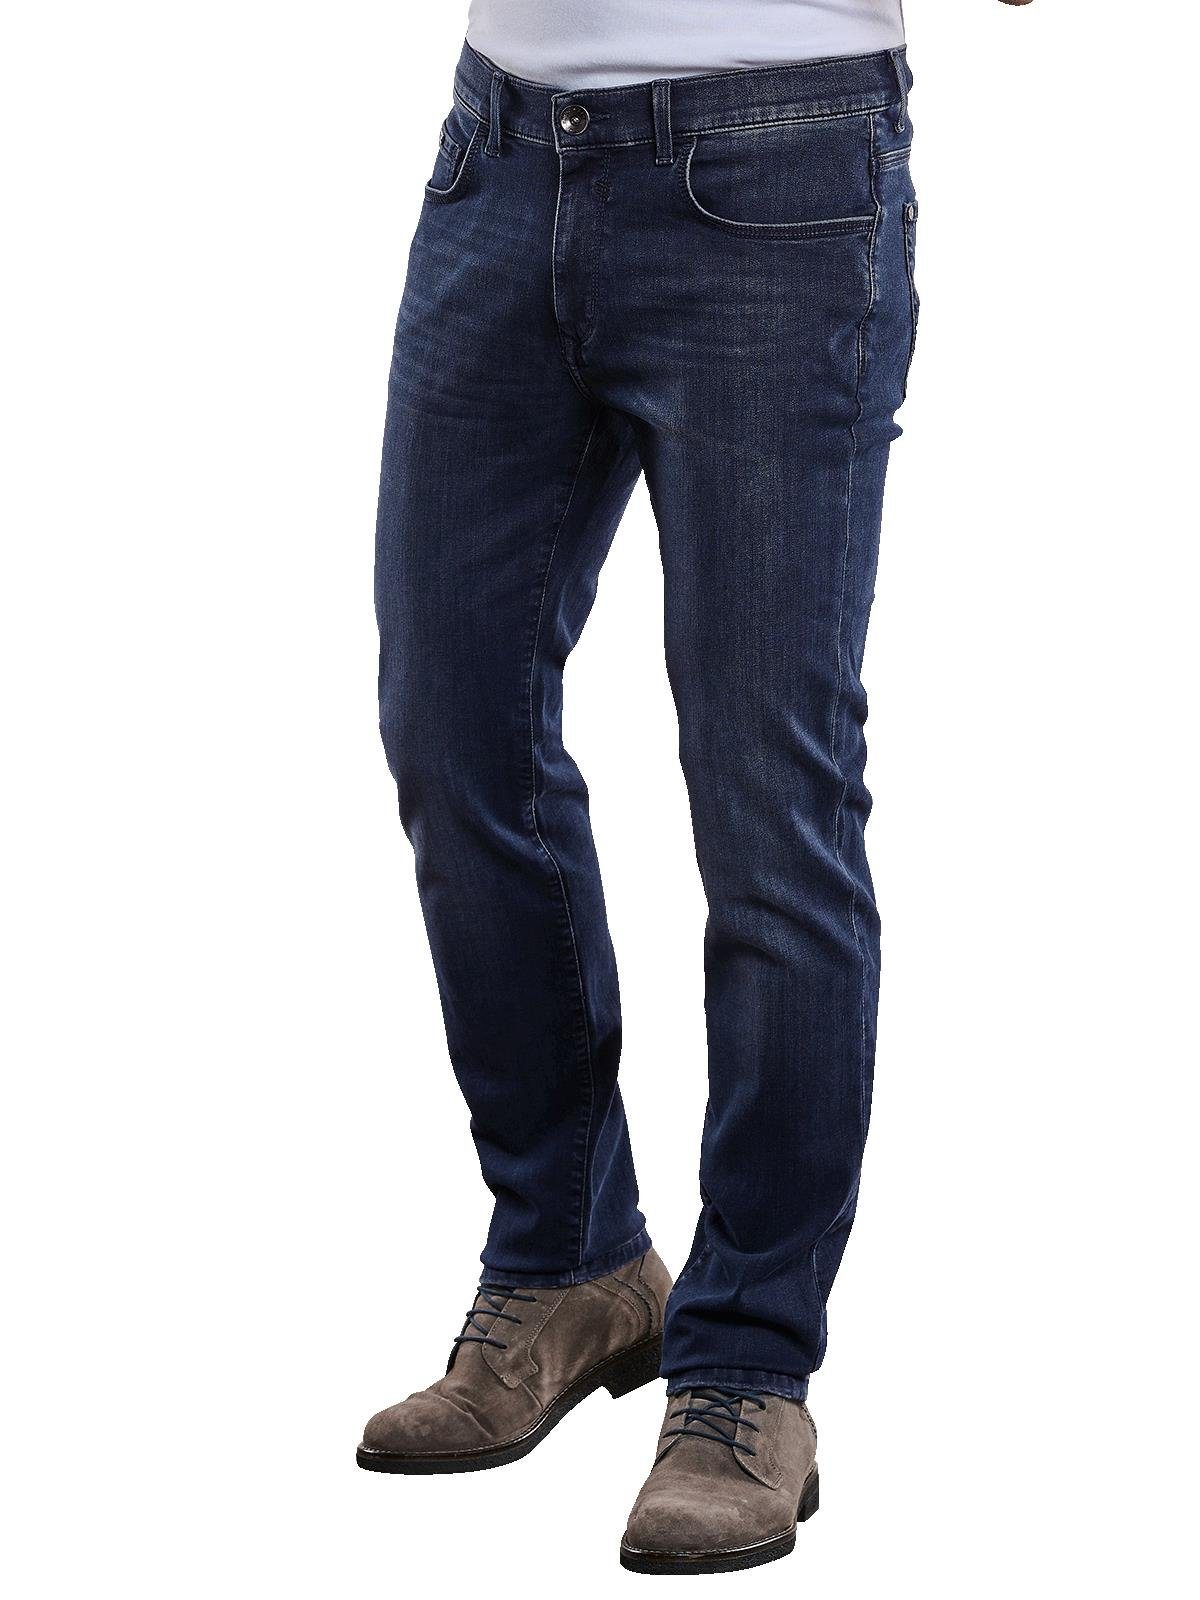 Engbers Stretch-Jeans Super-Stretch-Jeans fit slim